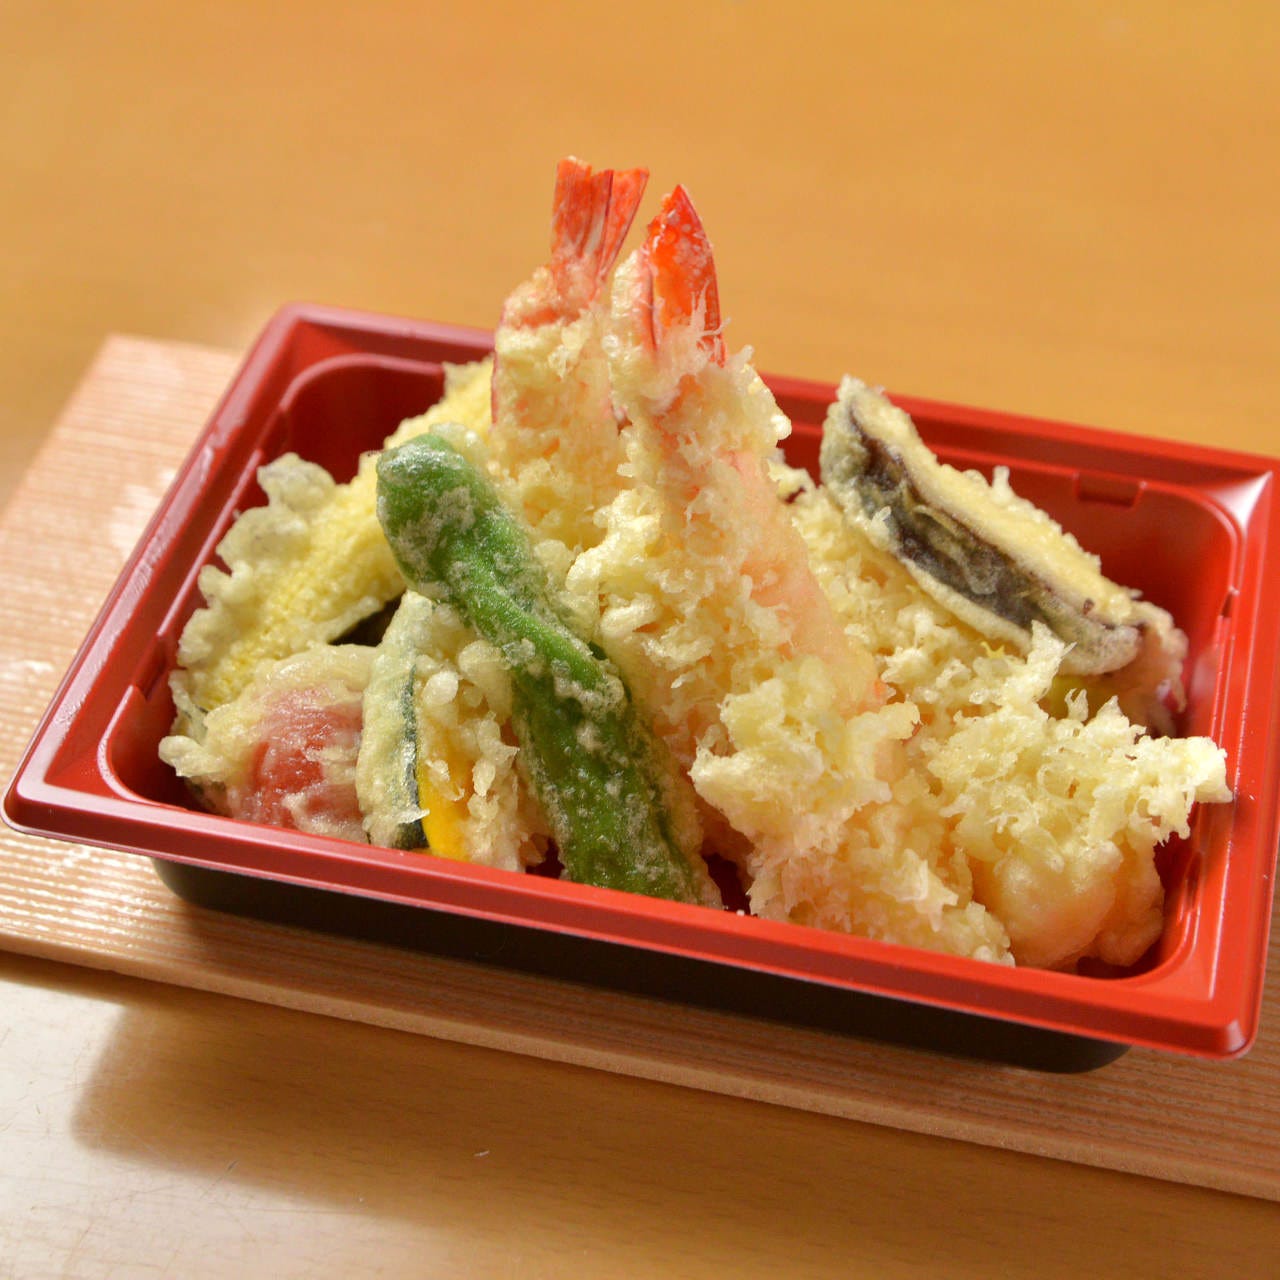 注文を受けてから油に落とす揚げたての天ぷらをご提供いたします